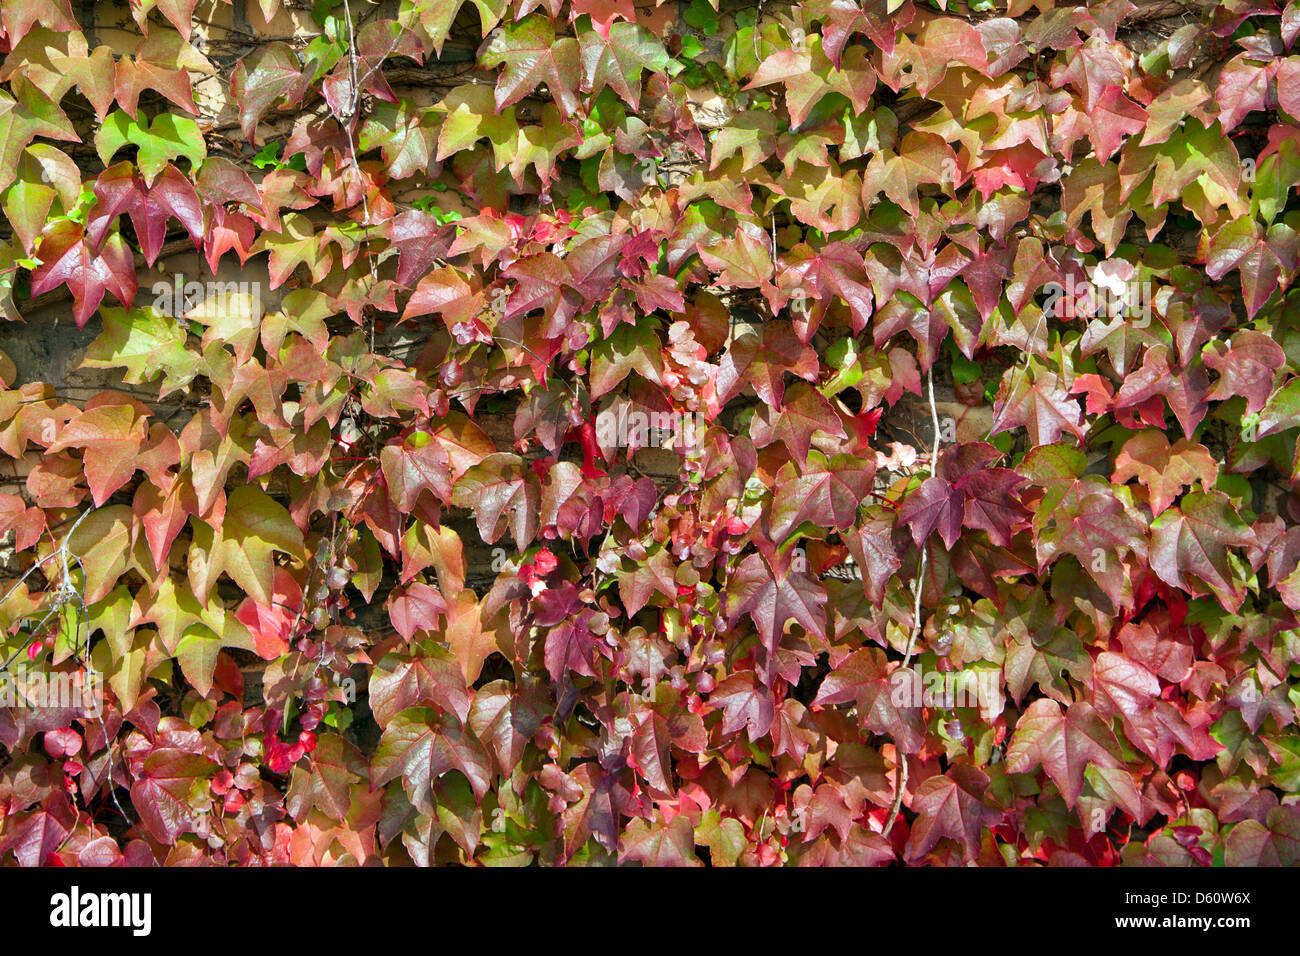 parthenocissus quinquefolia Stock Photo